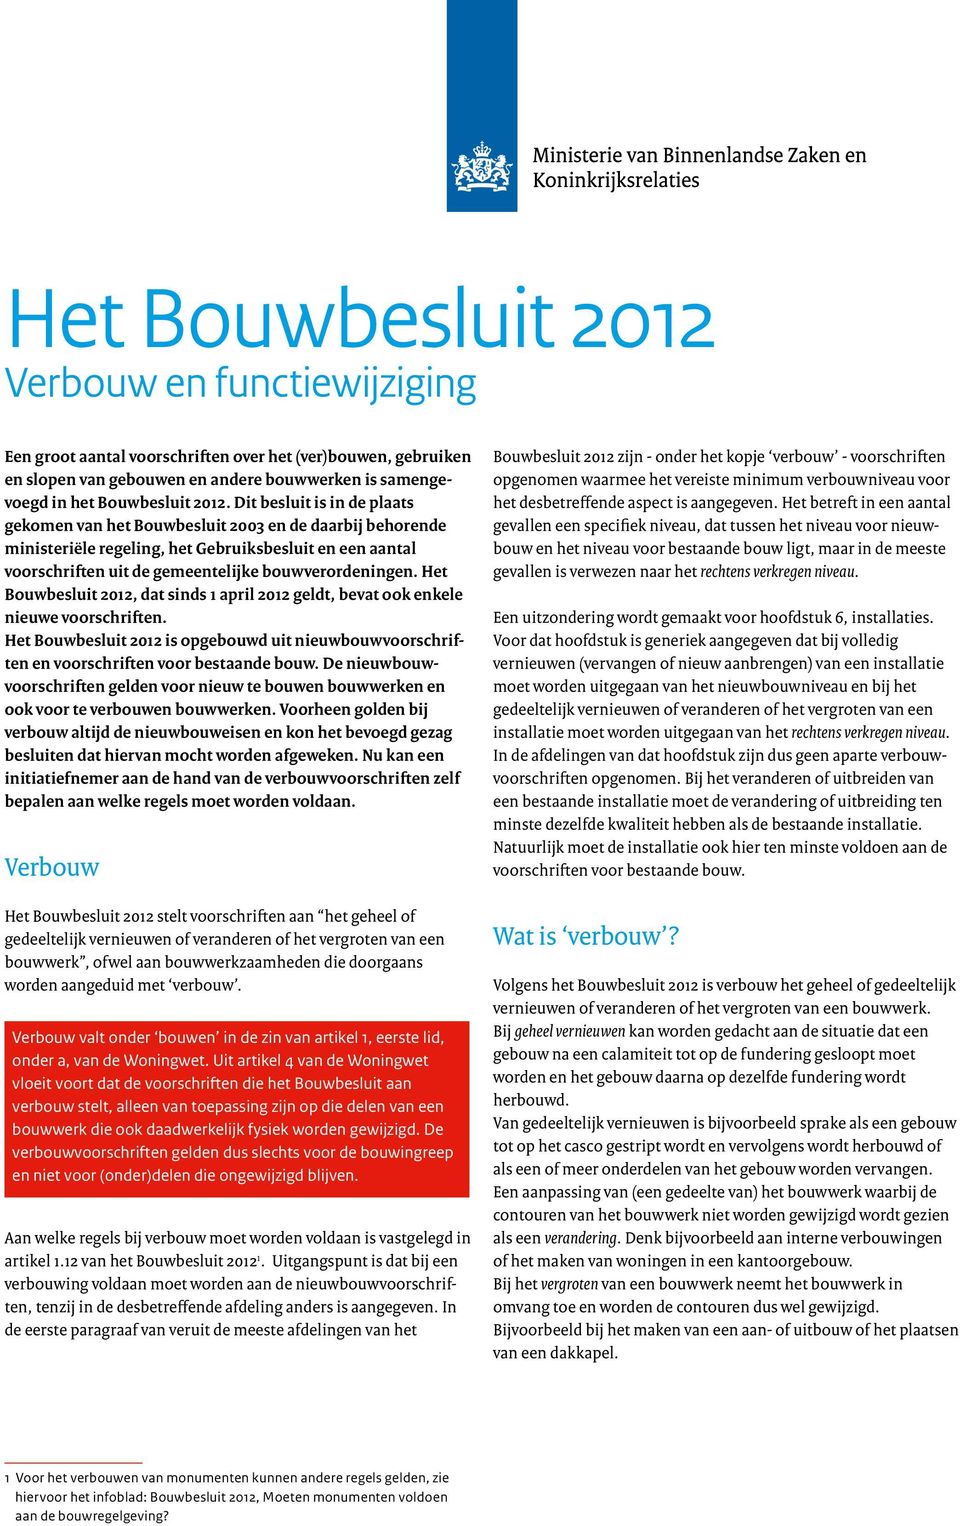 Het Bouwbesluit 2012, dat sinds 1 april 2012 geldt, bevat ook enkele nieuwe voorschriften. Het Bouwbesluit 2012 is opgebouwd uit nieuwbouwvoorschriften en voorschriften voor bestaande bouw.